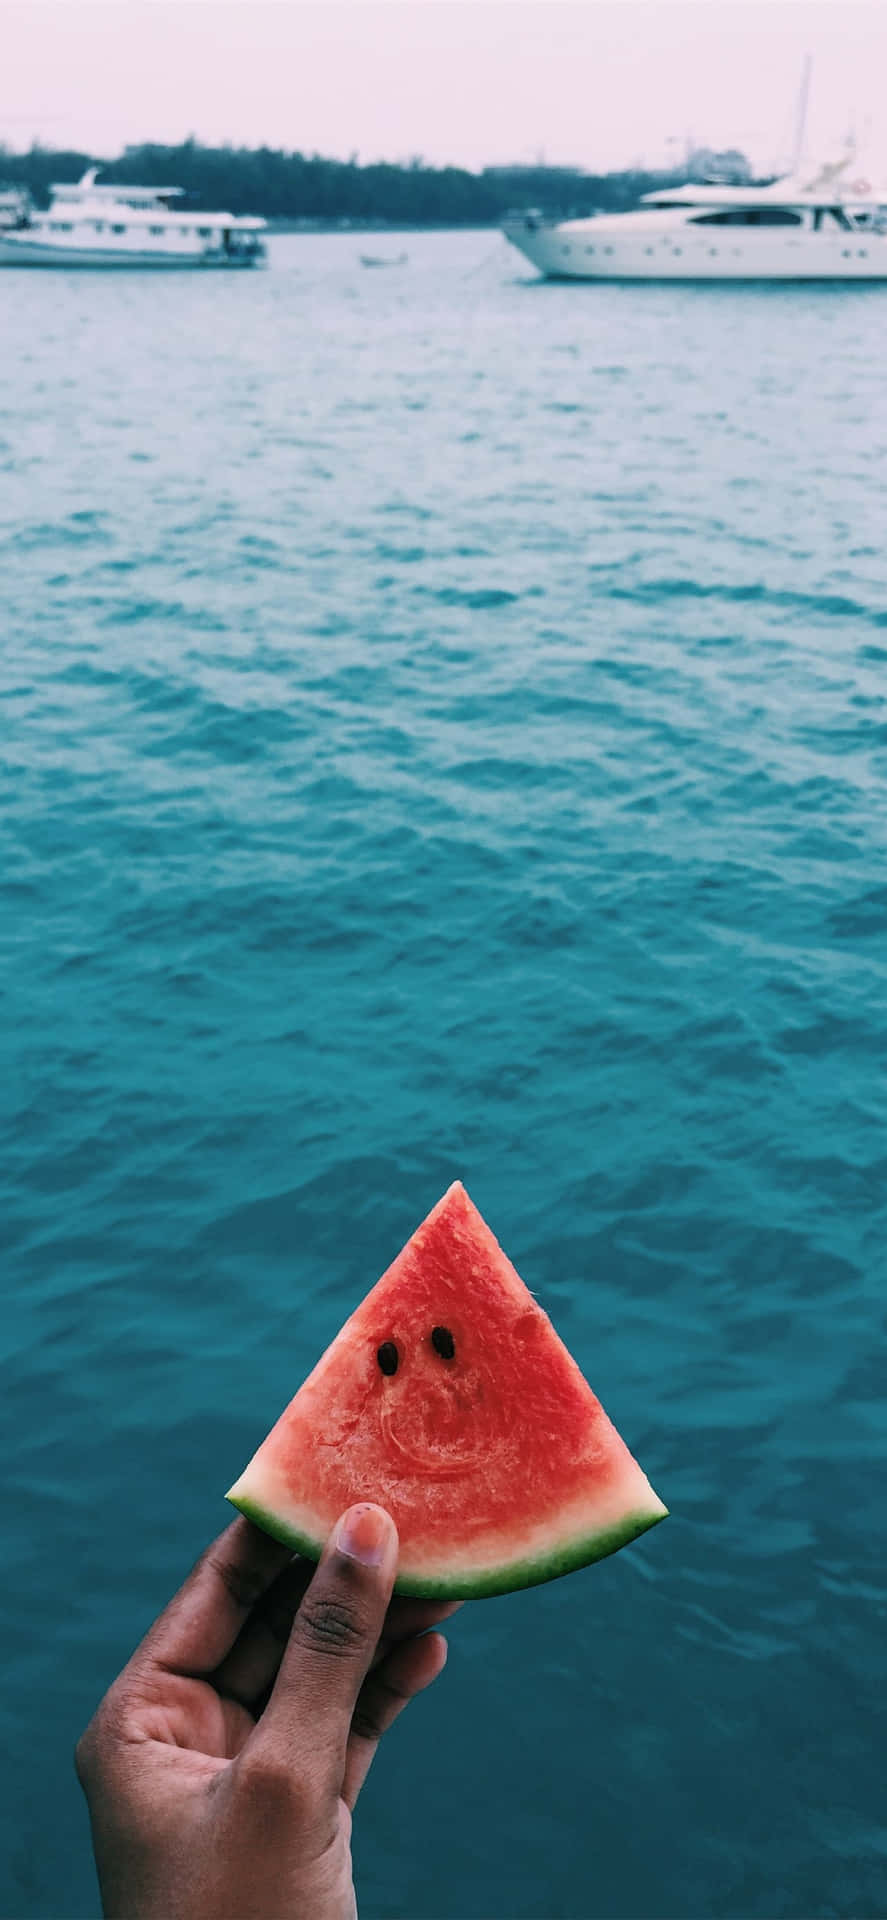 Eineperson Hält Eine Scheibe Wassermelone Vor Einem Boot. Wallpaper